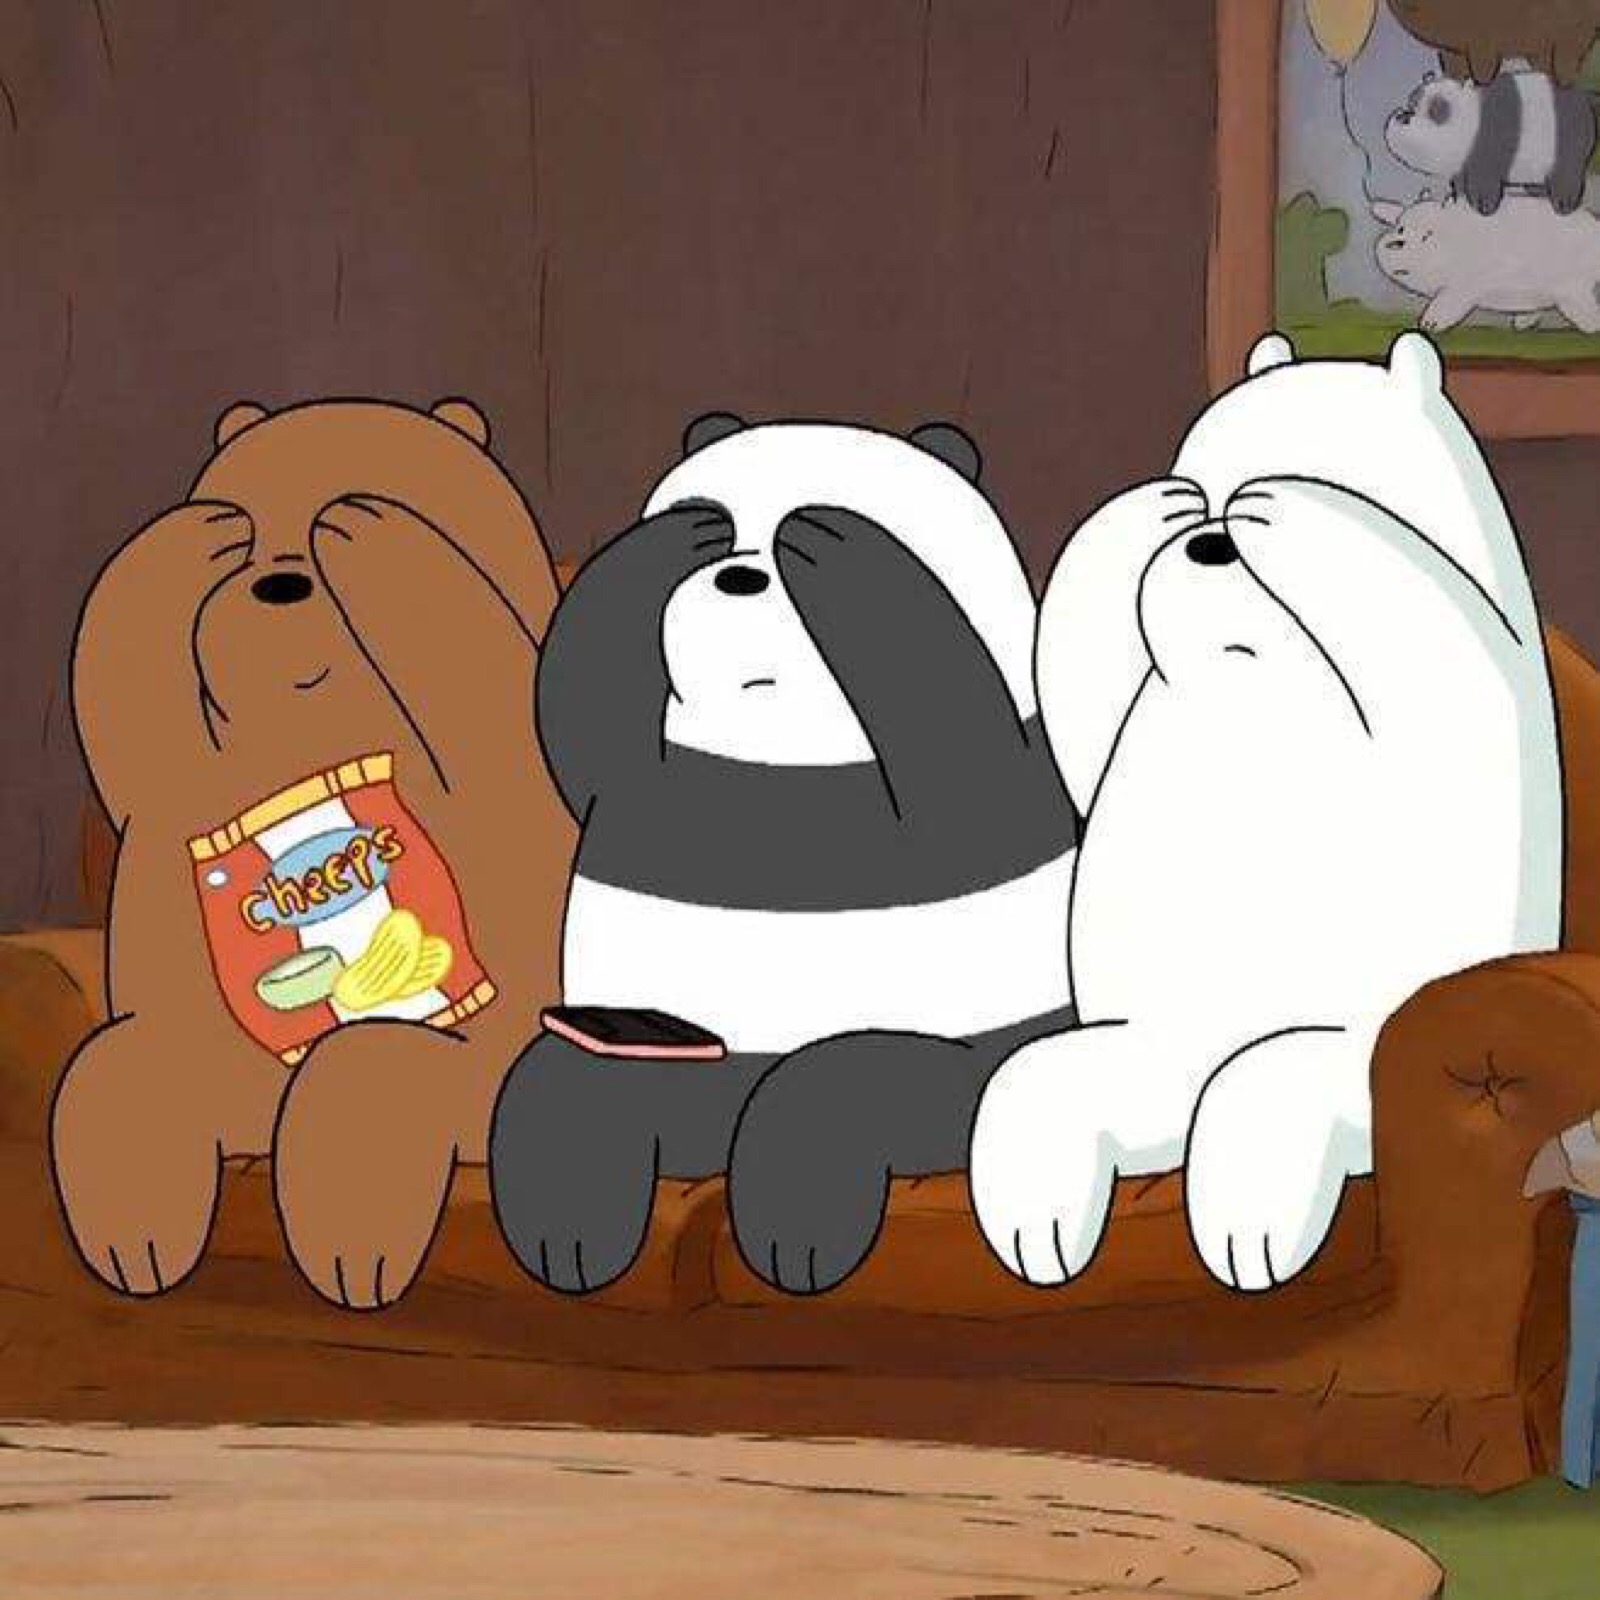 三只裸熊朋友圈背景图图片